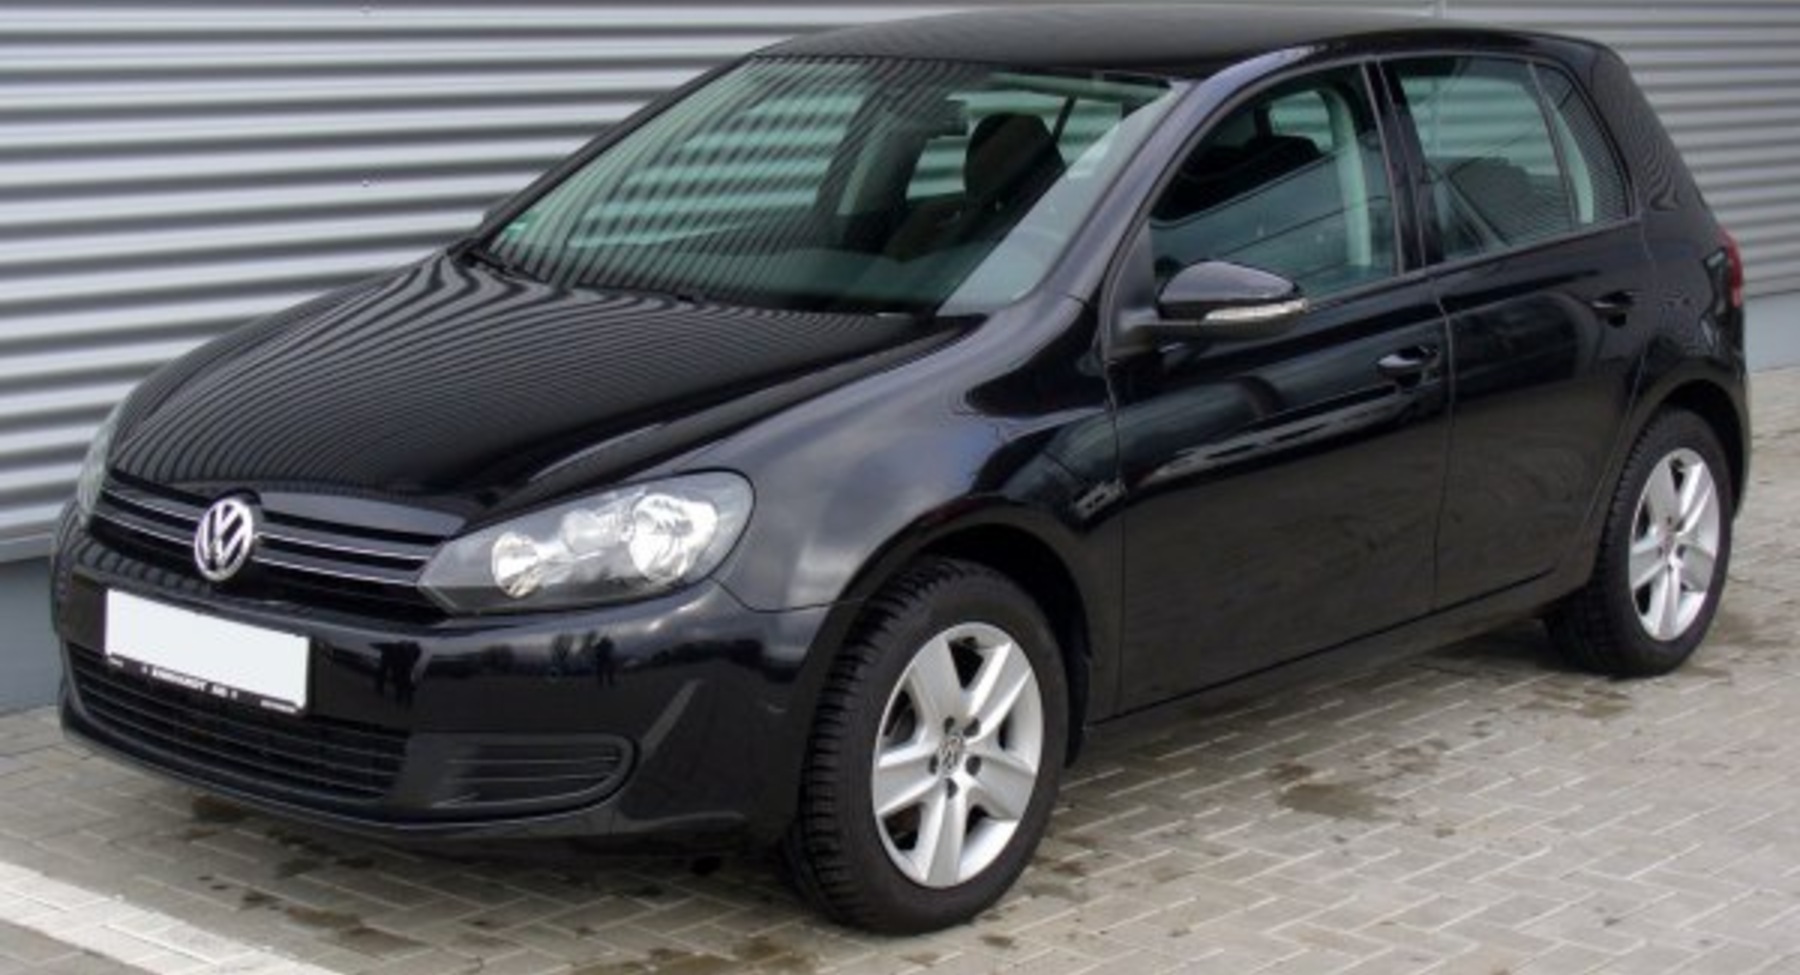 Volkswagen Golf VI (5-door) 1.2 TSI (85 Hp) 2010, 2011, 2012 